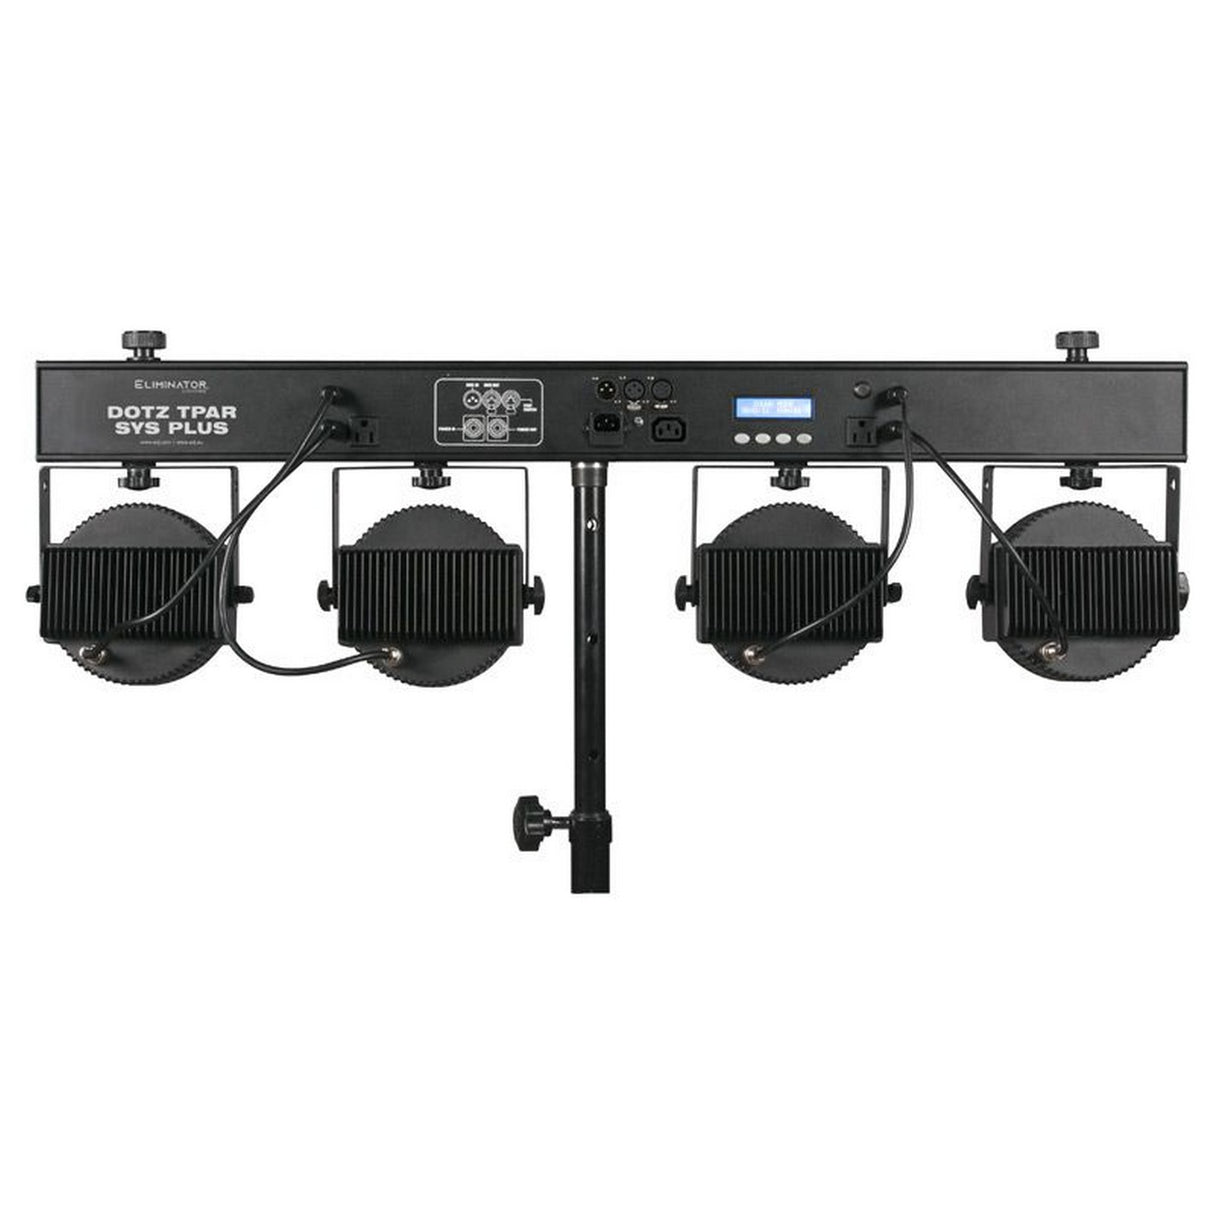 Eliminator Lighting Dotz Tpar Sys Plus 4x COB LED Stage Lighting Wash System